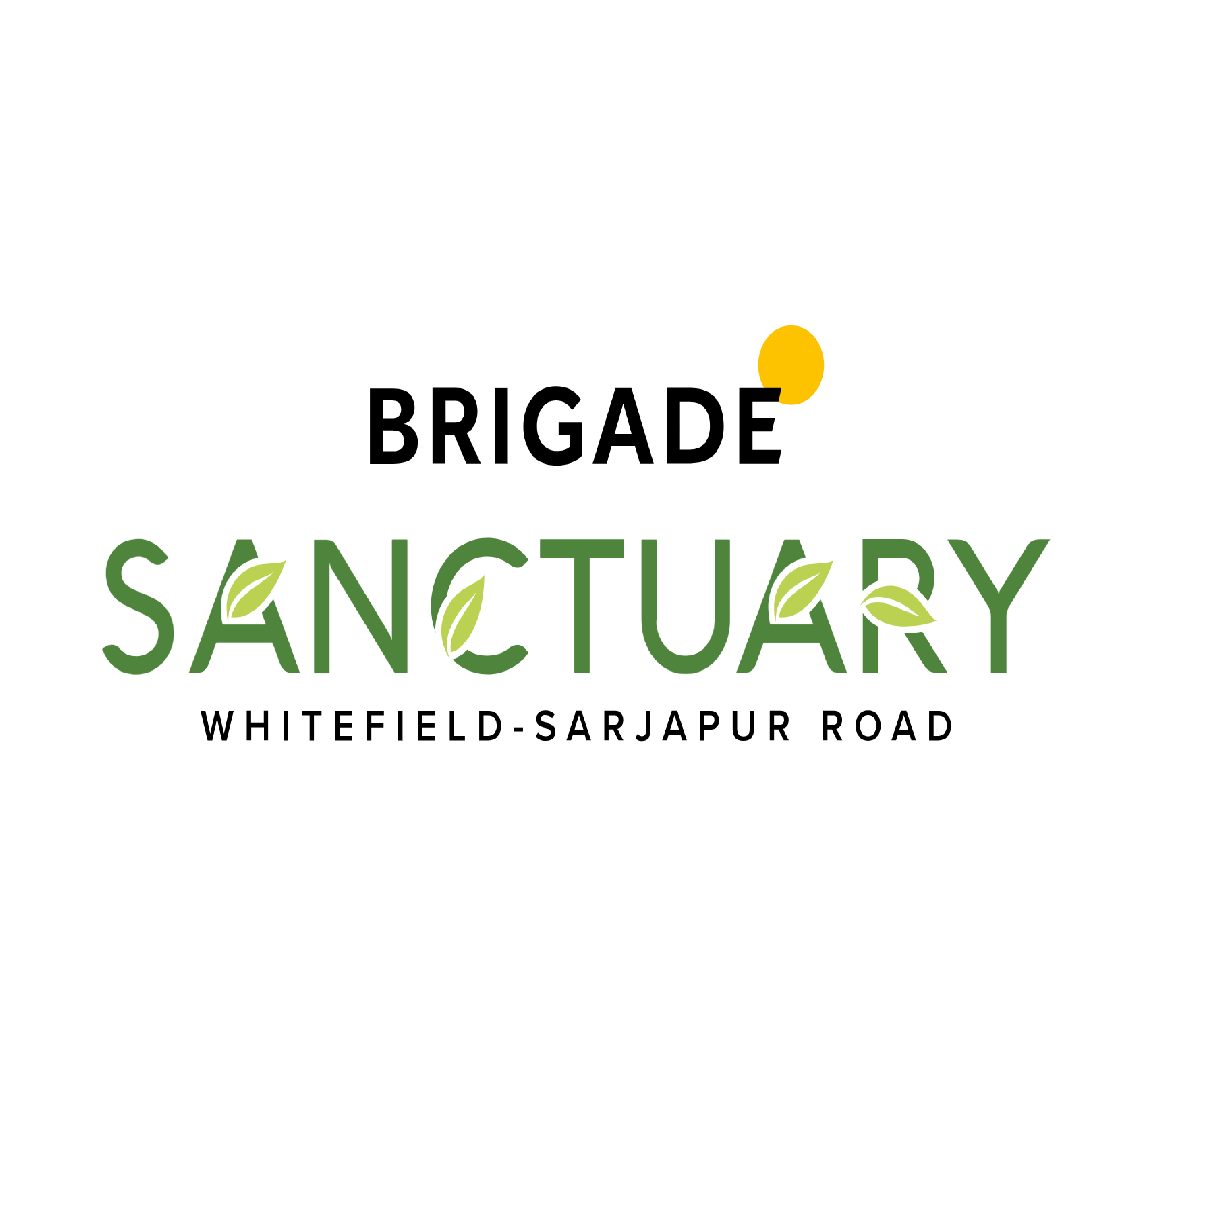 Brigade Sanctuary